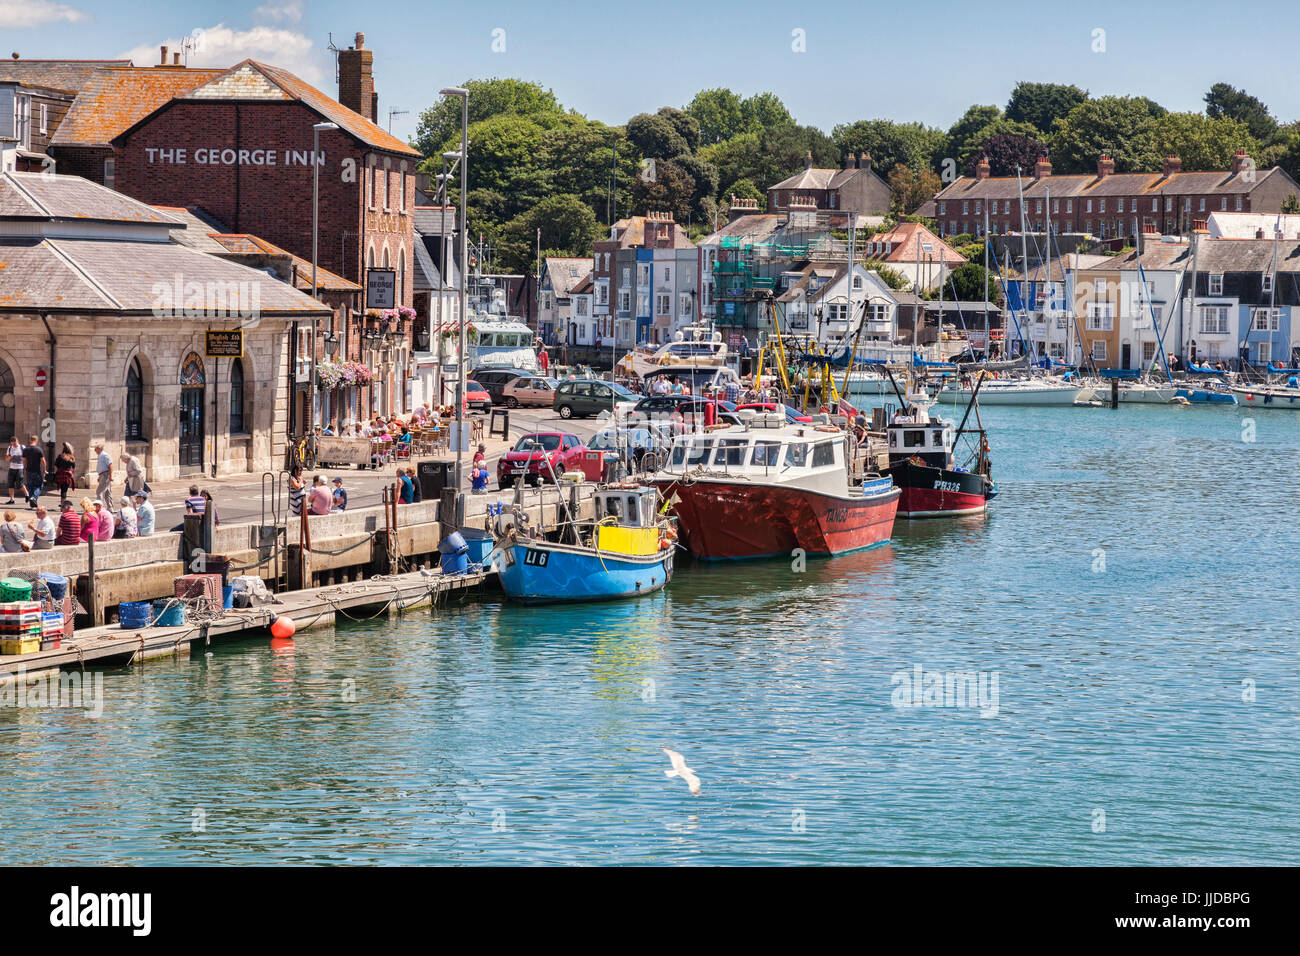 2 Juillet 2017 : Weymouth, Dorset, England, UK - La rivière Wey et le vieux quai sur un bel après-midi d'été ensoleillé. Banque D'Images